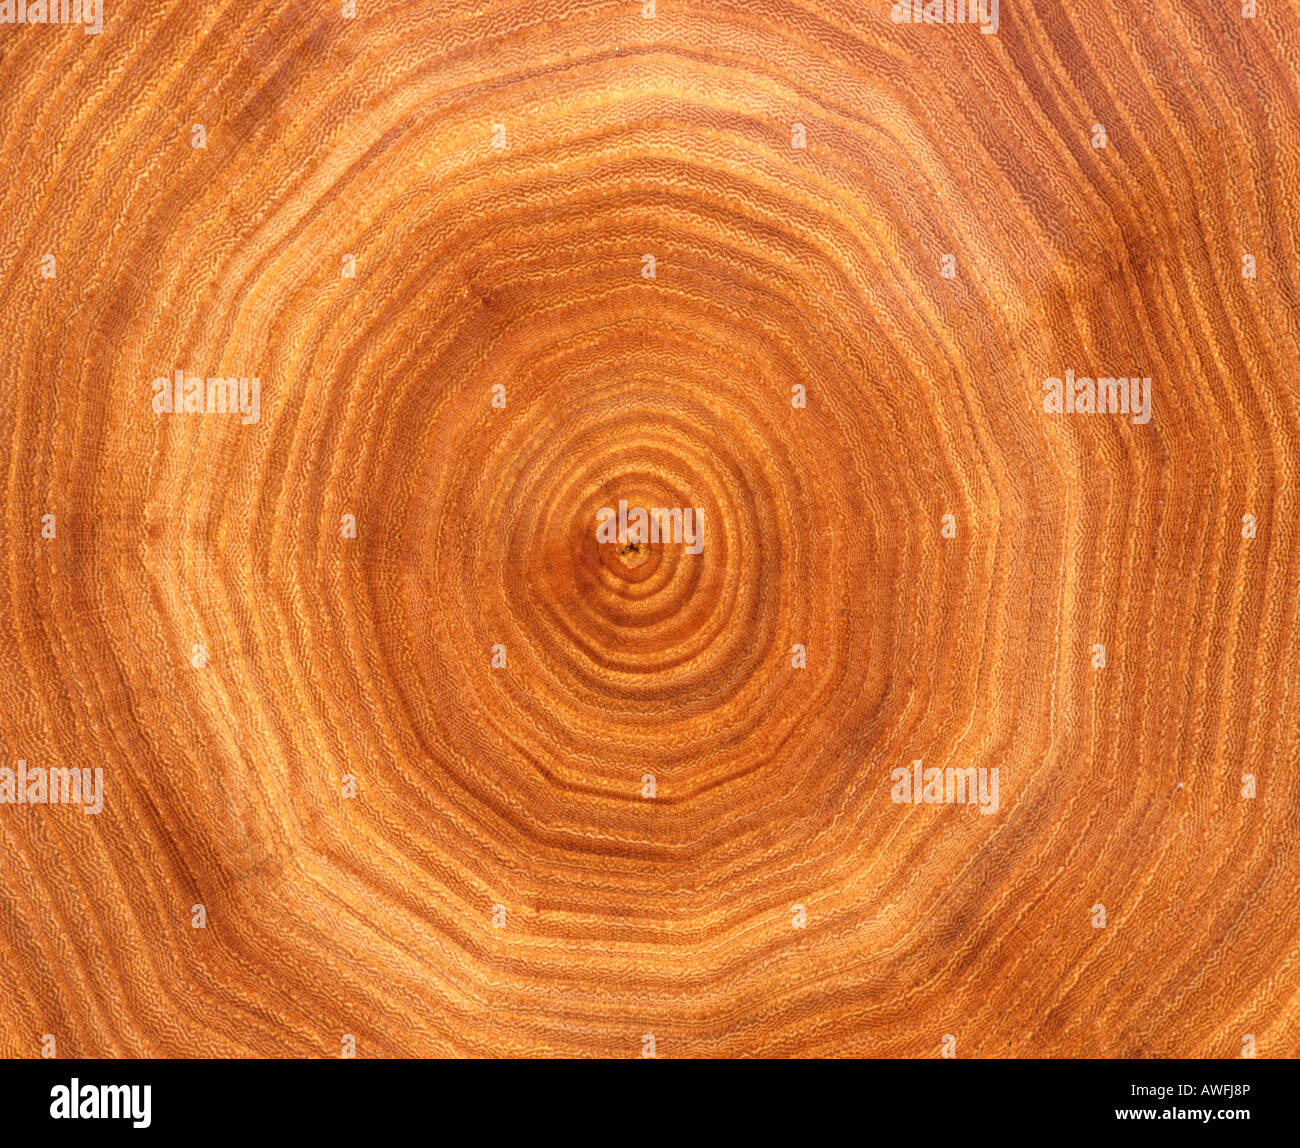 Tronco di albero della sezione: gli anelli di un albero Foto Stock